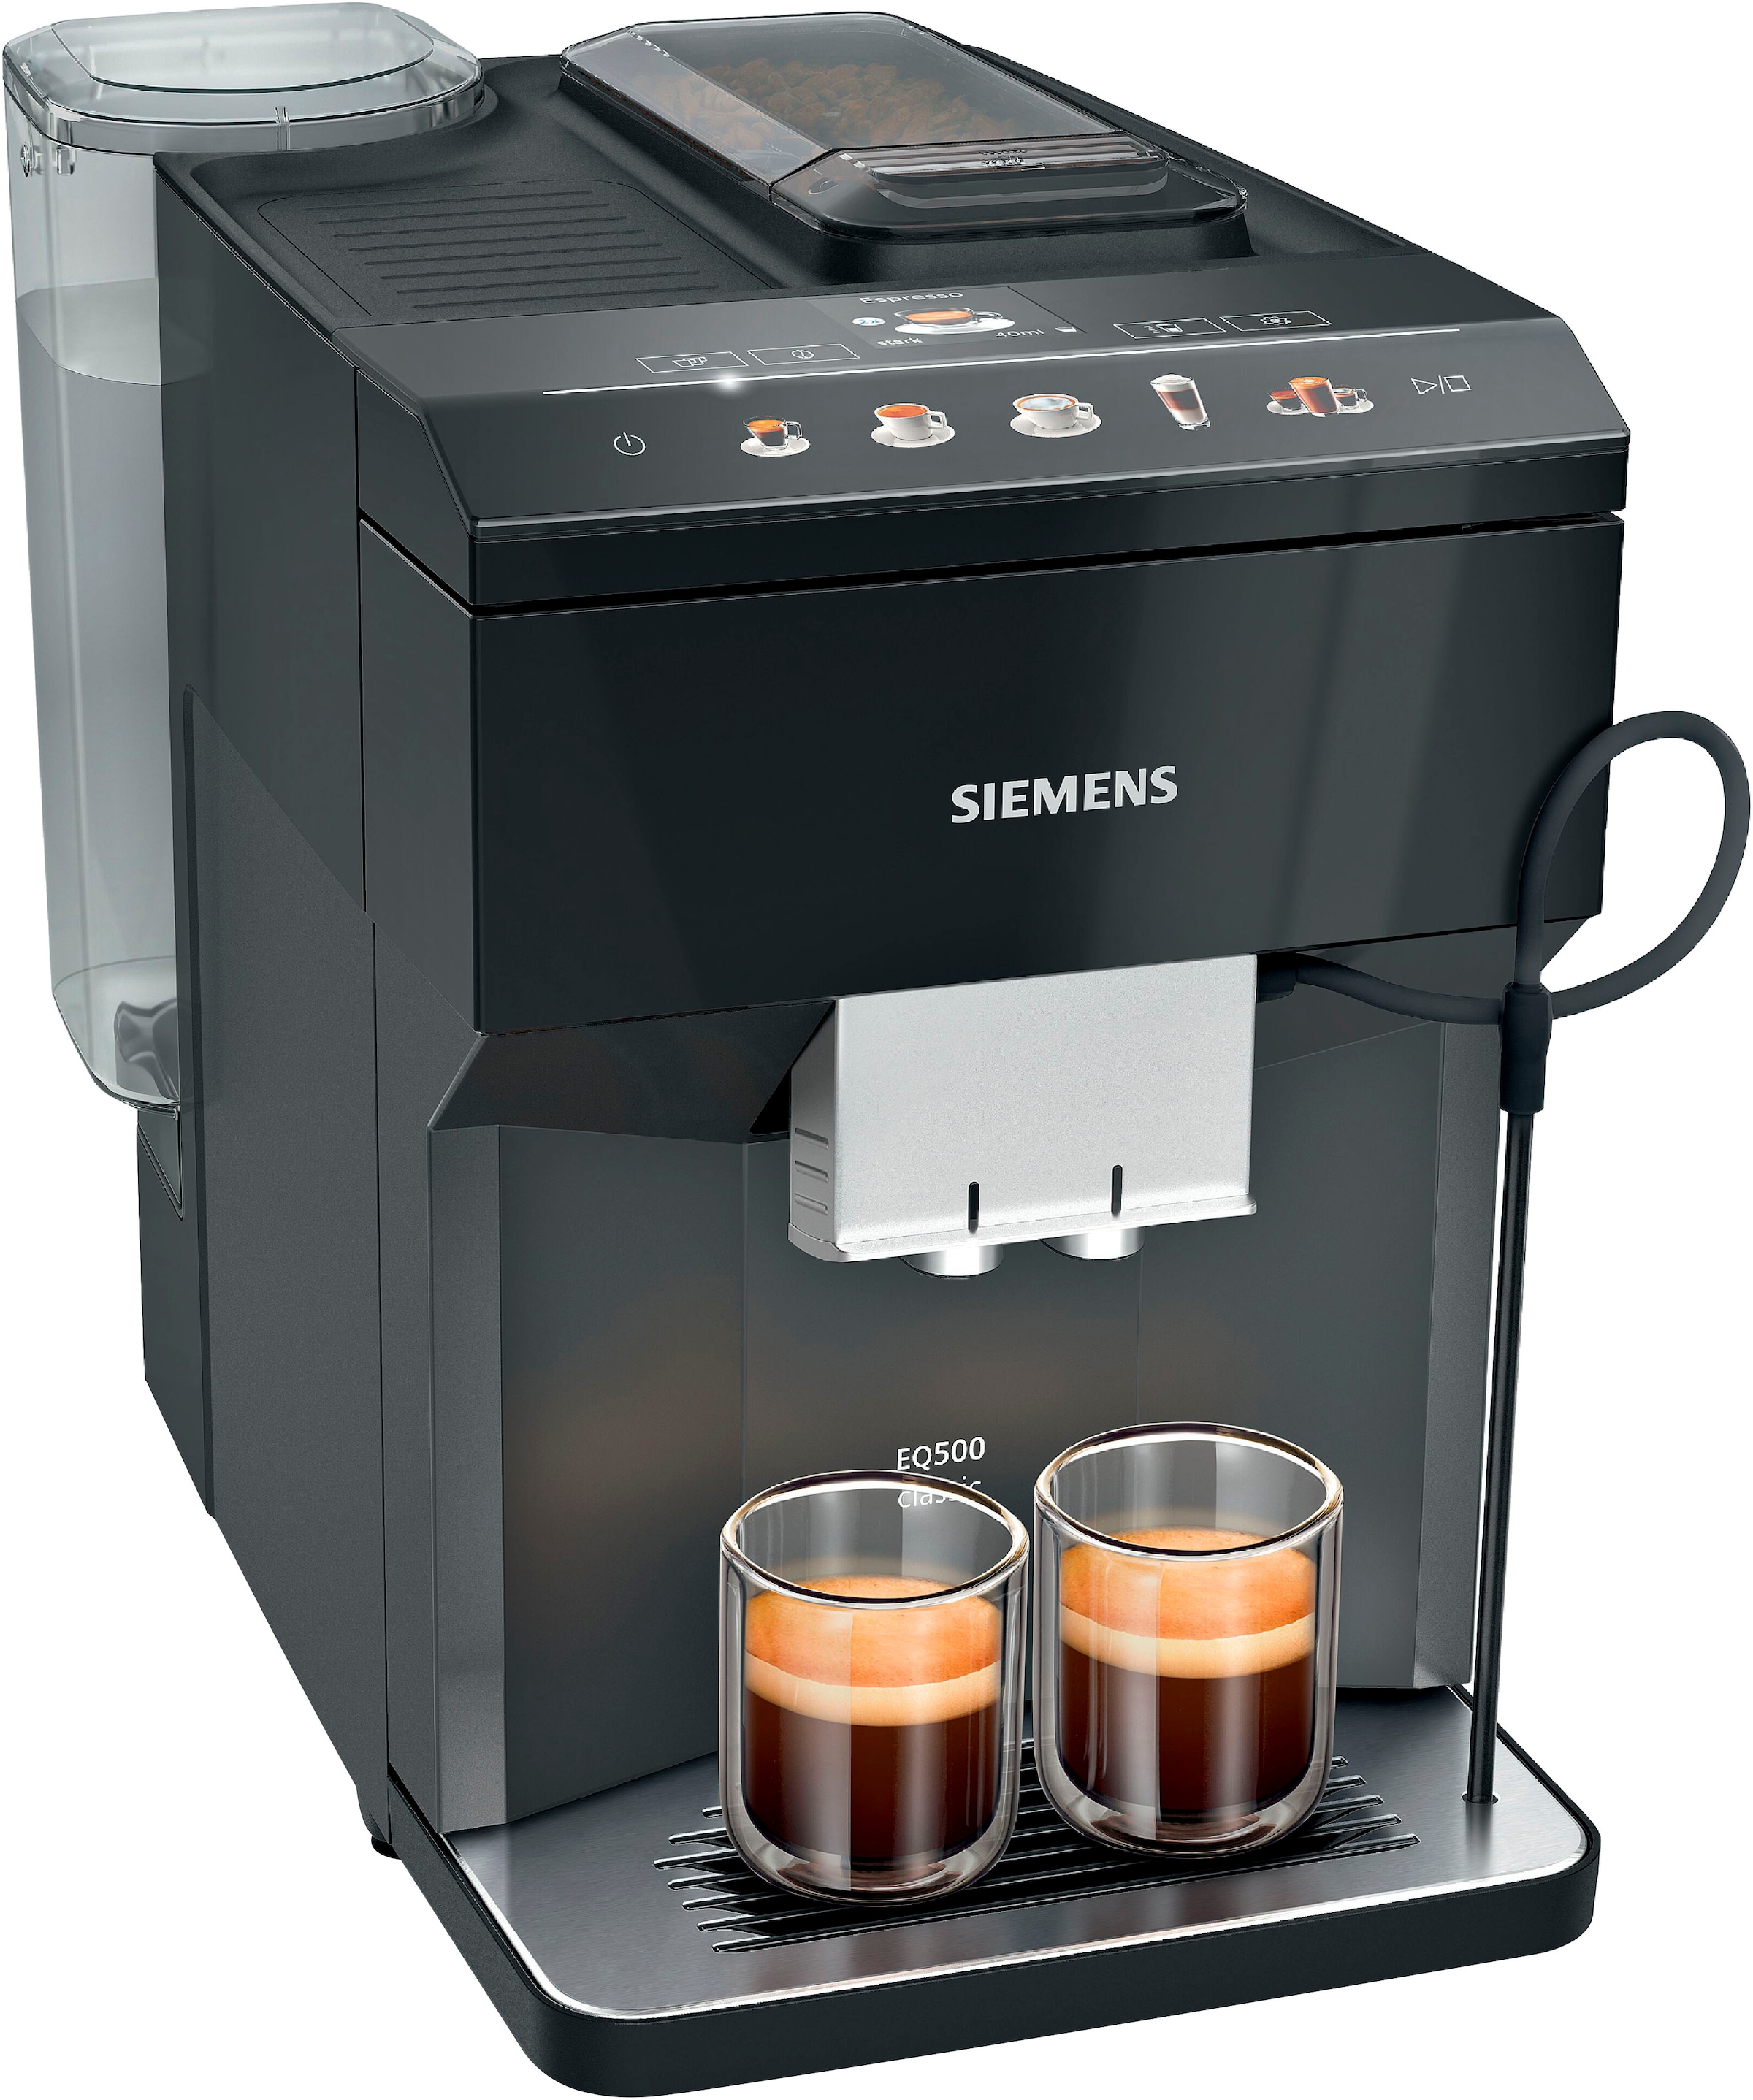 SIEMENS Kaffeevollautomat »EQ500 classic viele bestellen auto.Dampfreinigung,schwarz Spezialitäten,Doppeltassenfunktion, TP513D09«